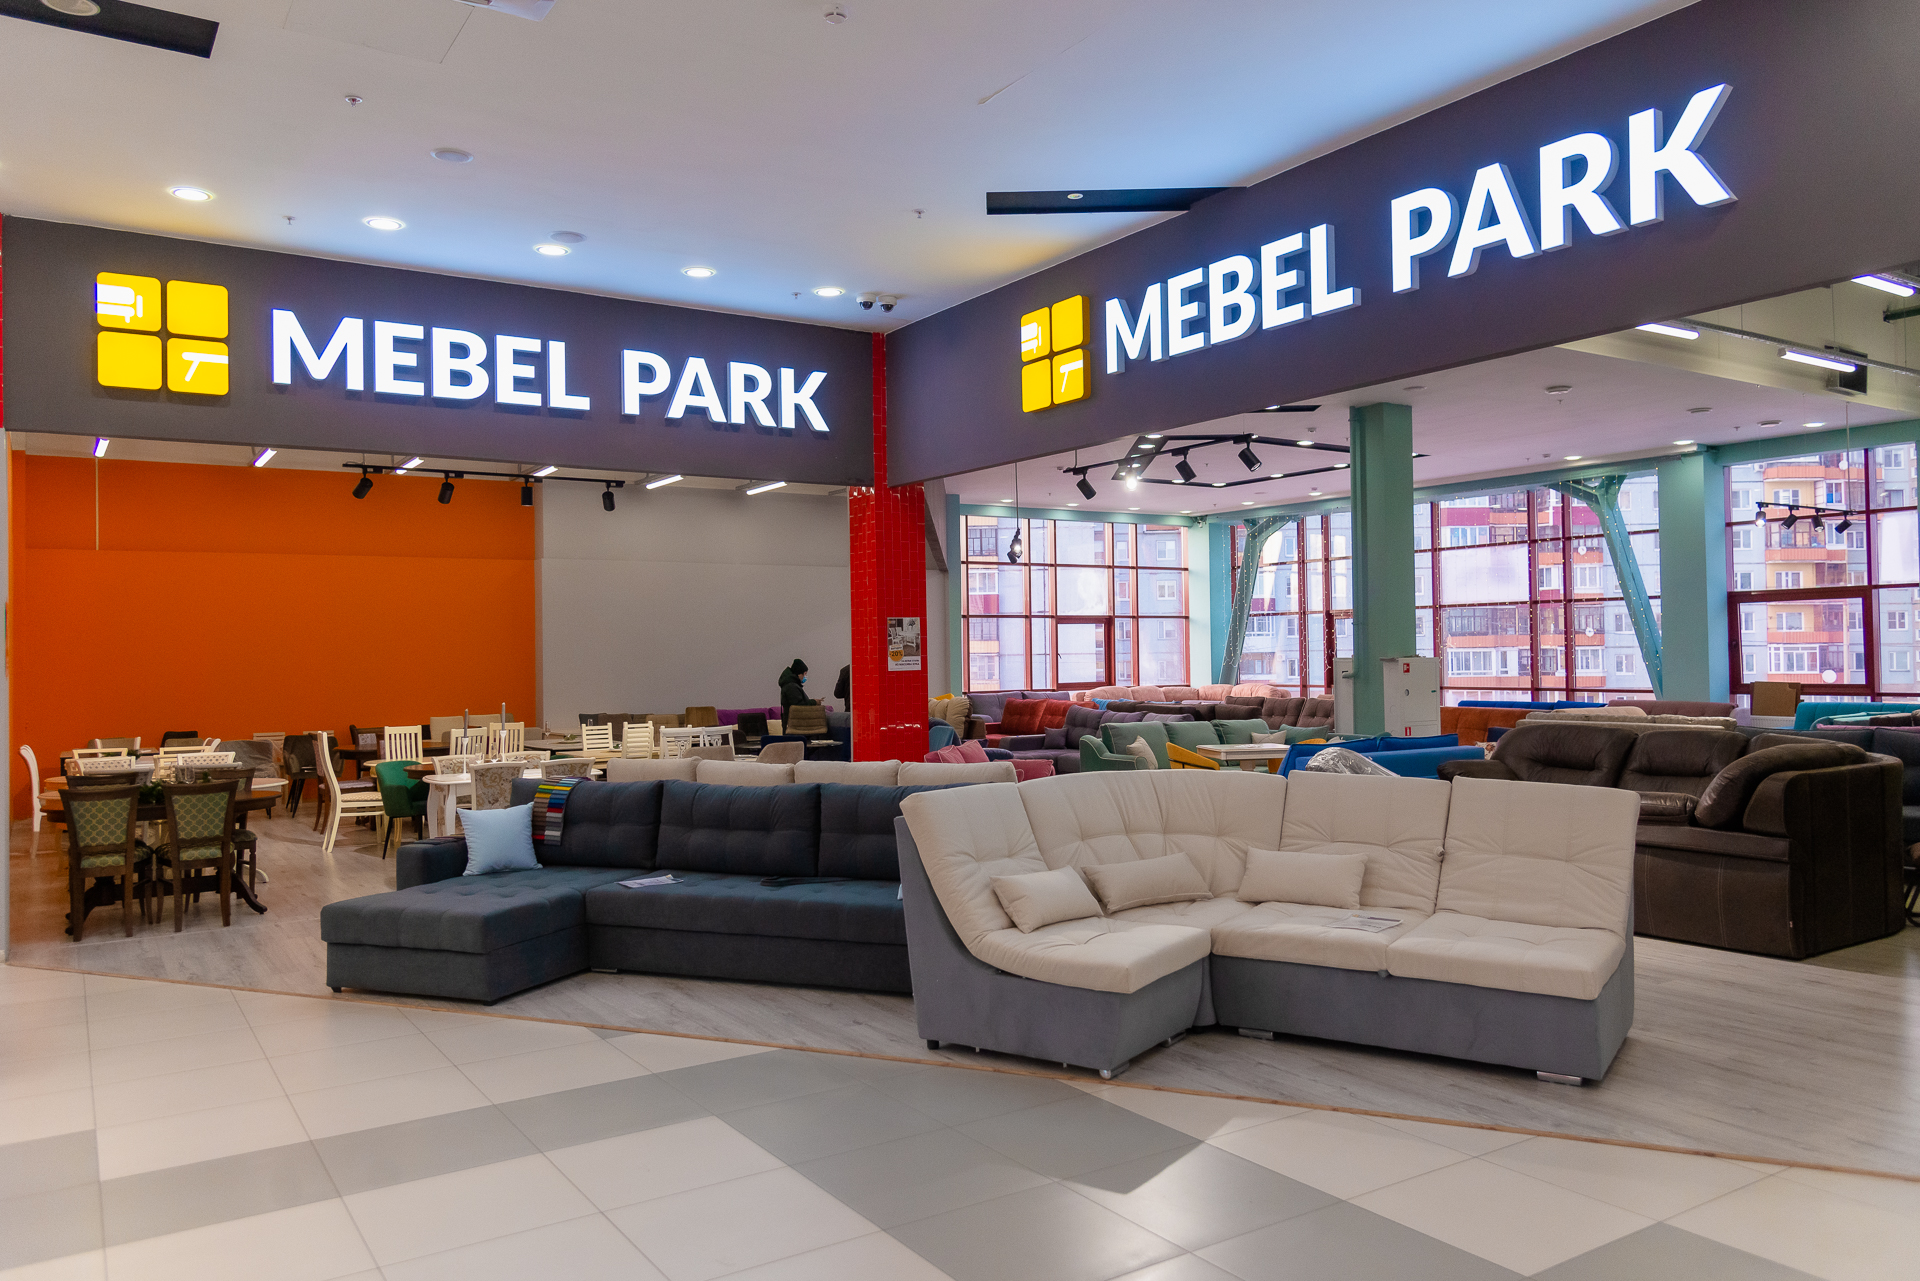 Салон Mebel Park расширил ассортимент. Диваны переехали на отдельную площадь